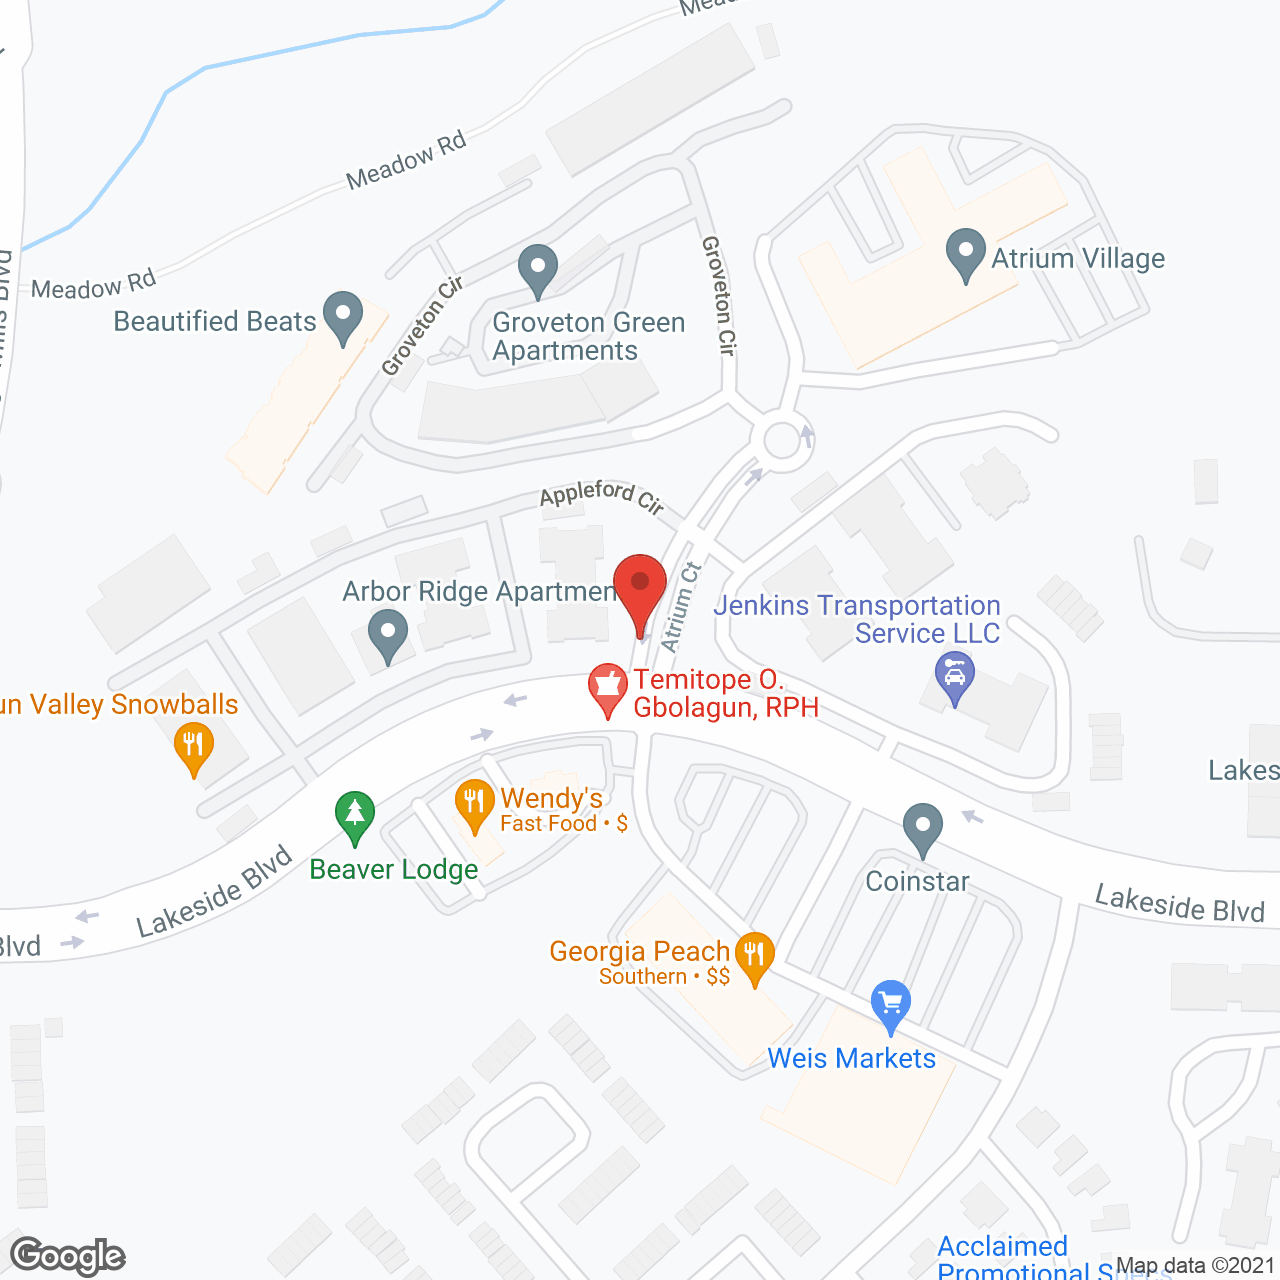 Atrium Village in google map